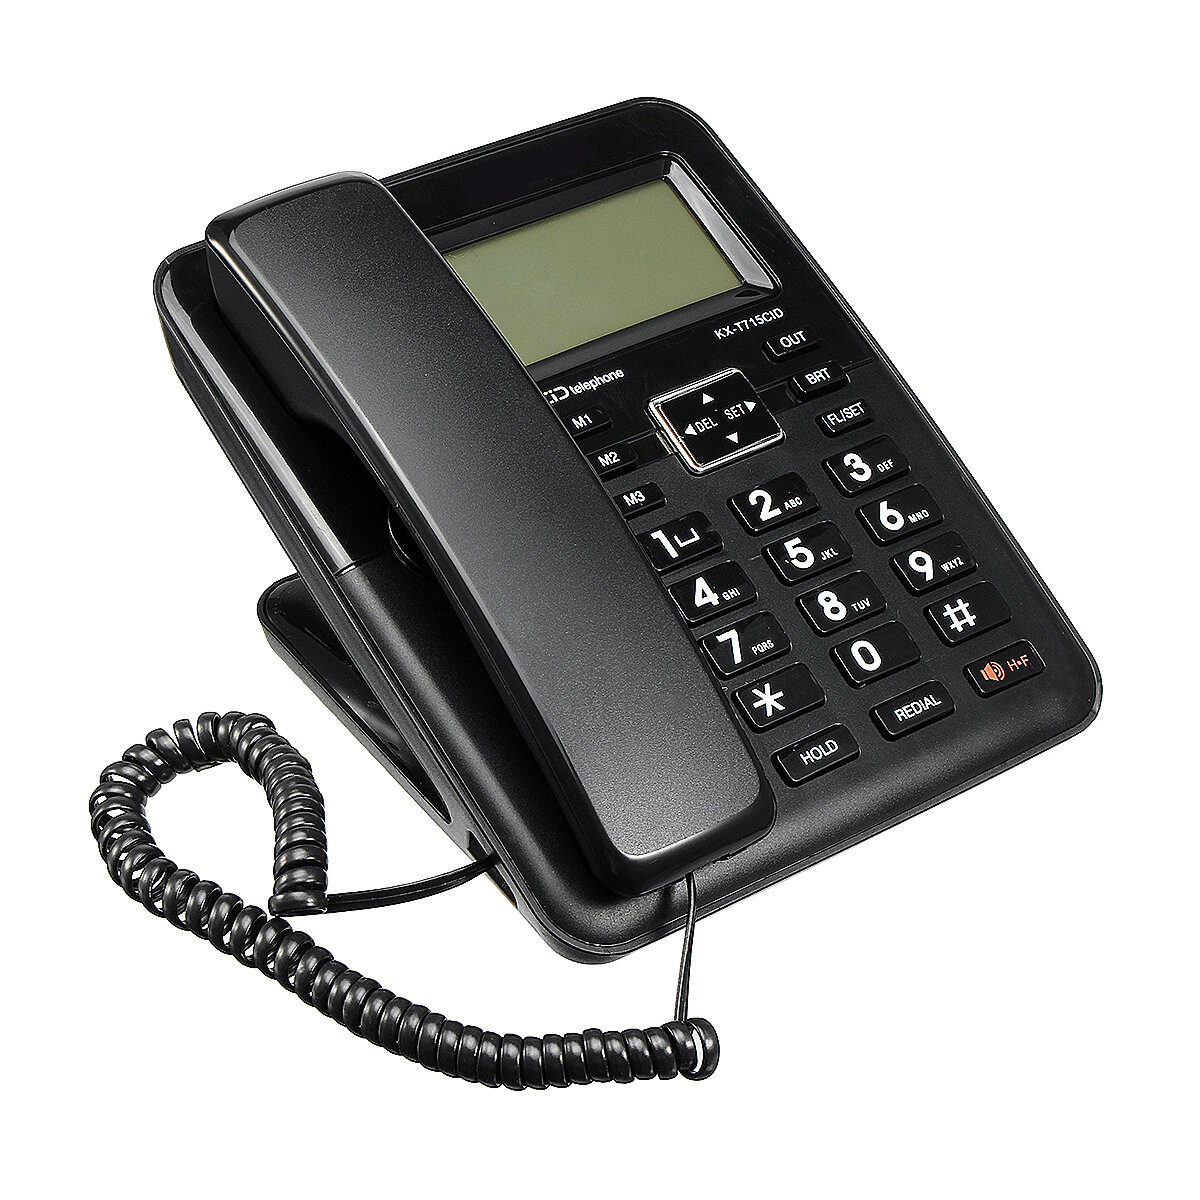 

Desktop Landline Phone Fixed Telephone FSK/DTMF Caller Corded Phone LCD Screen for Home Office Hotels Black